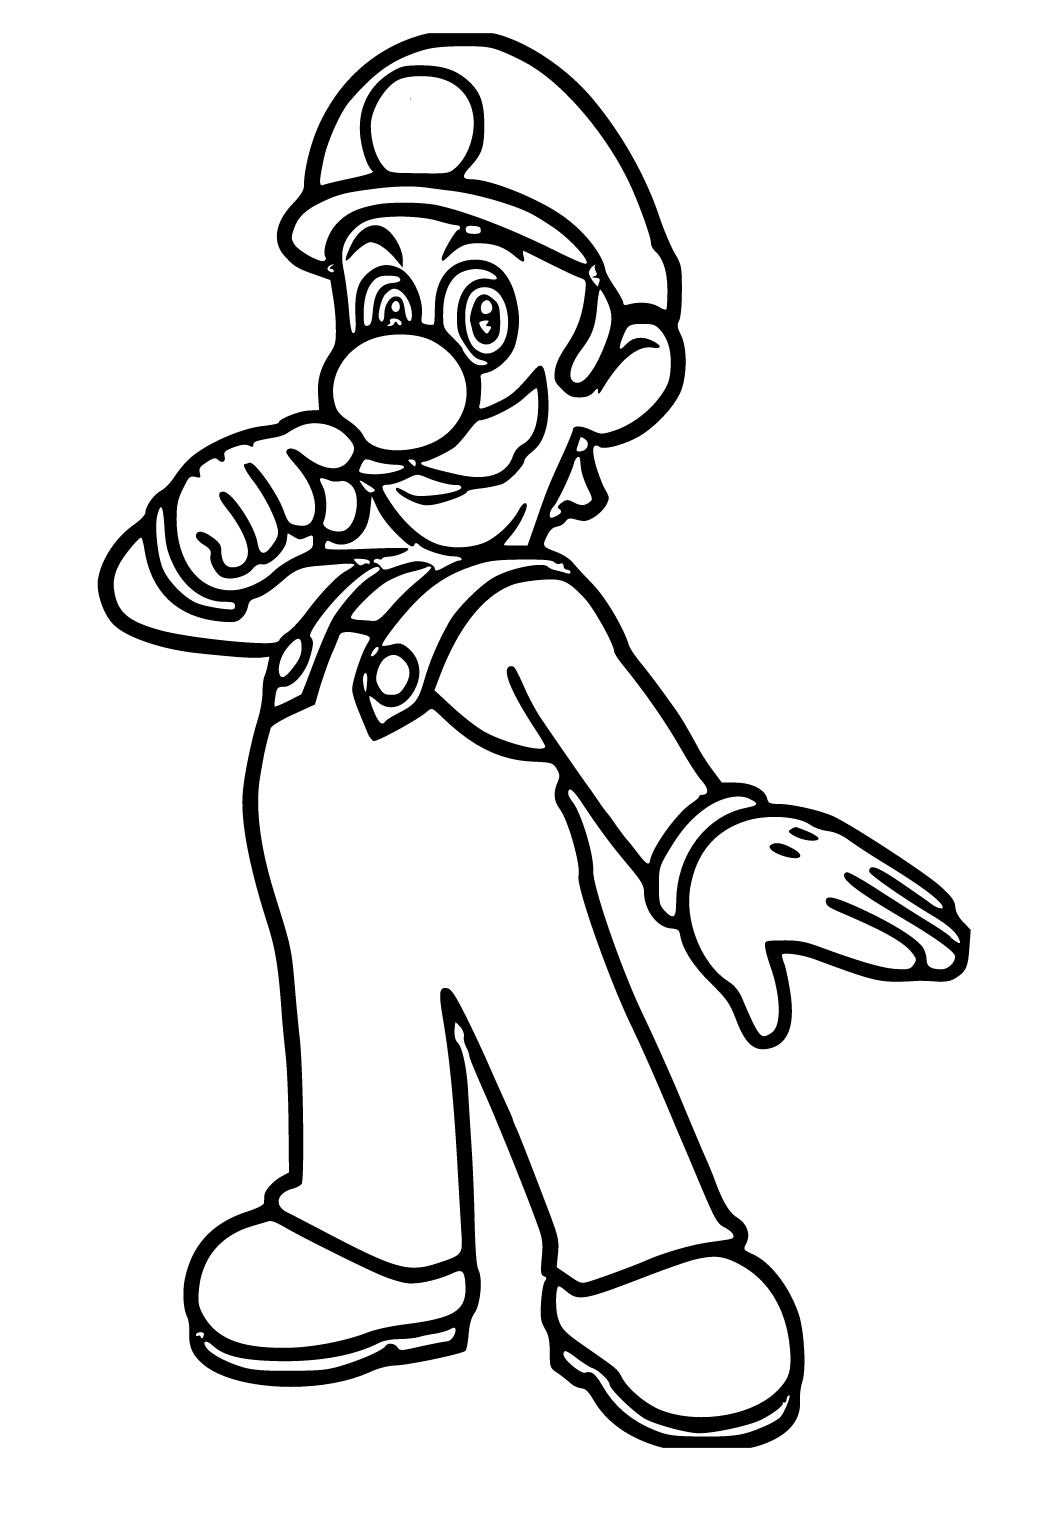 Mario e moto fofos para colorir - Imprimir Desenhos